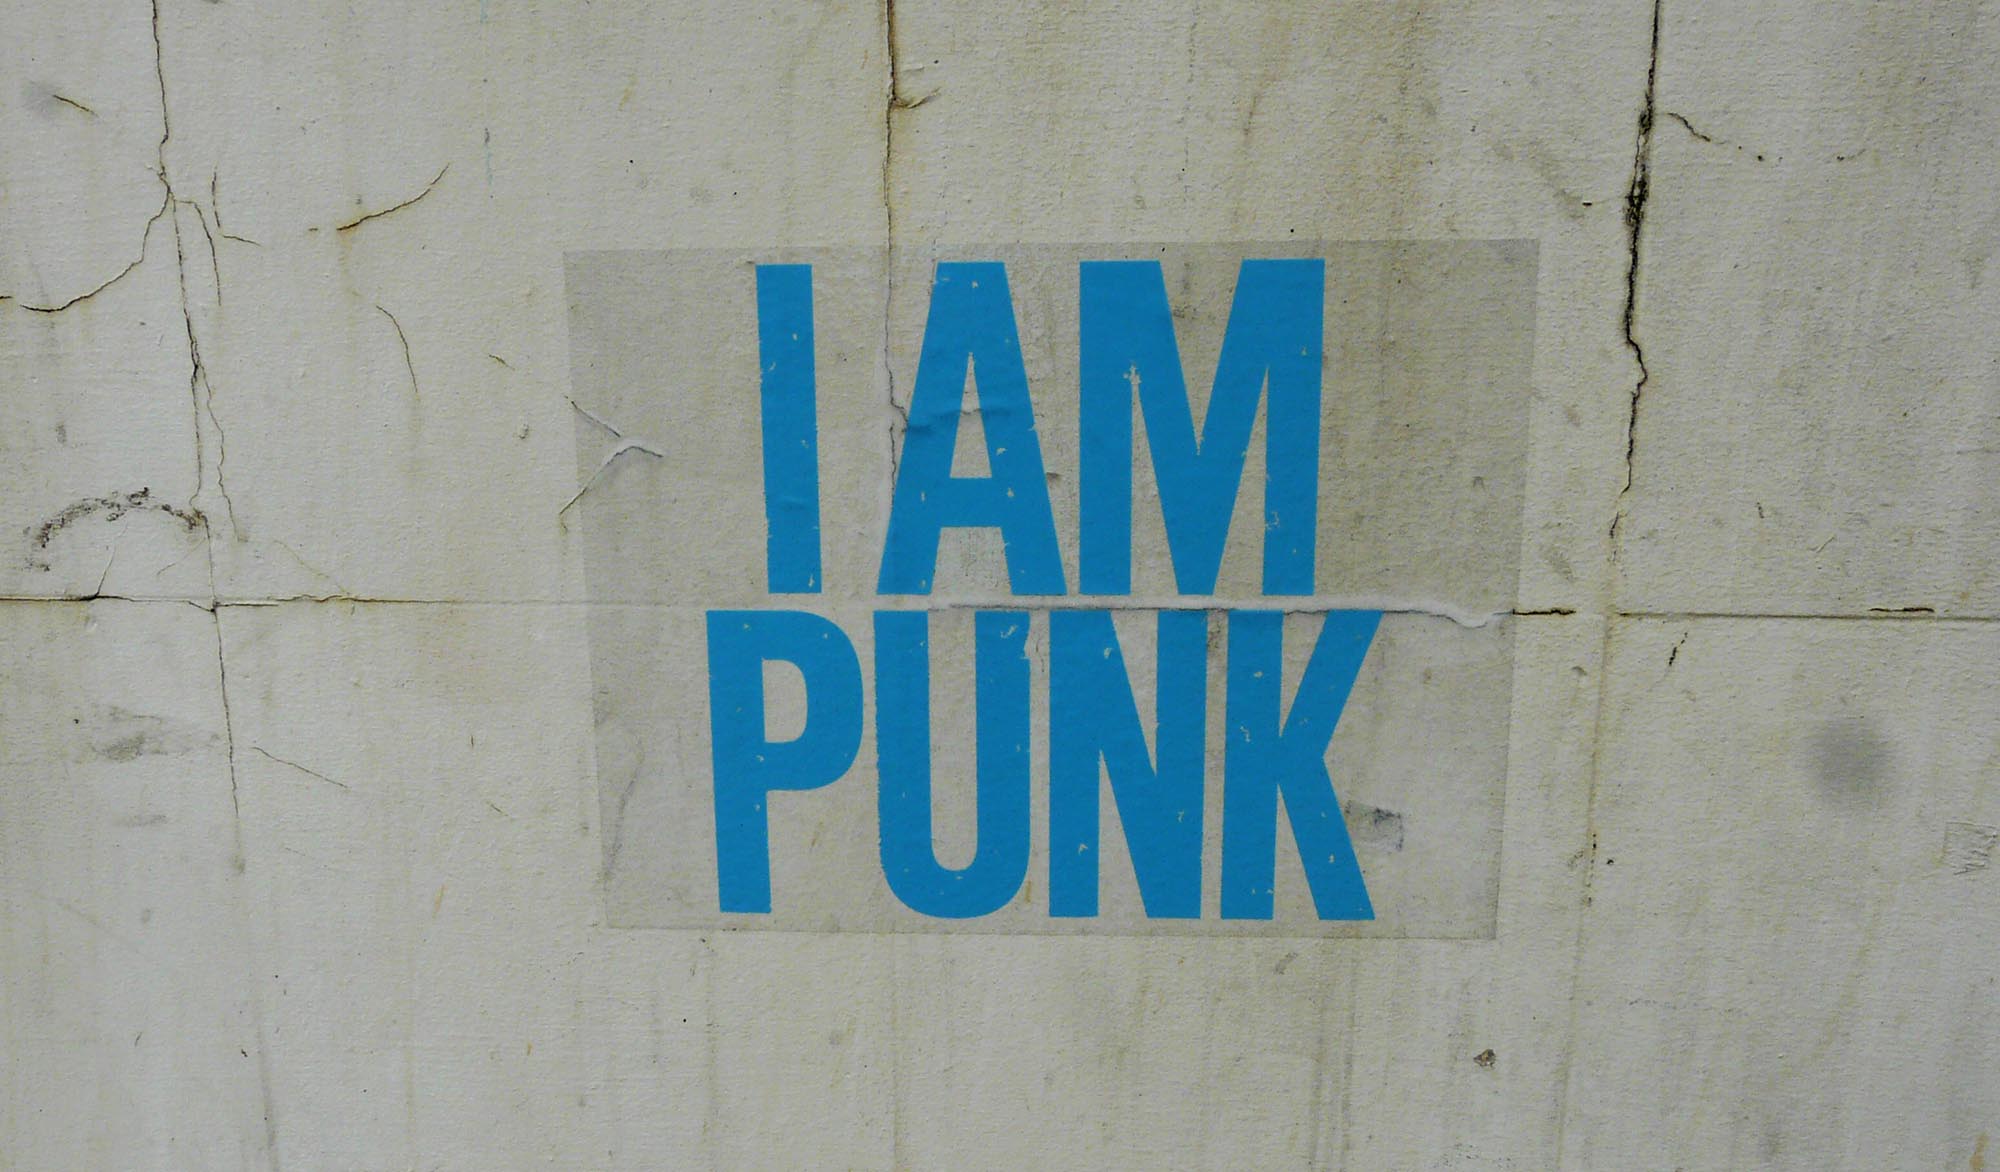 (en) Punk in a cardie